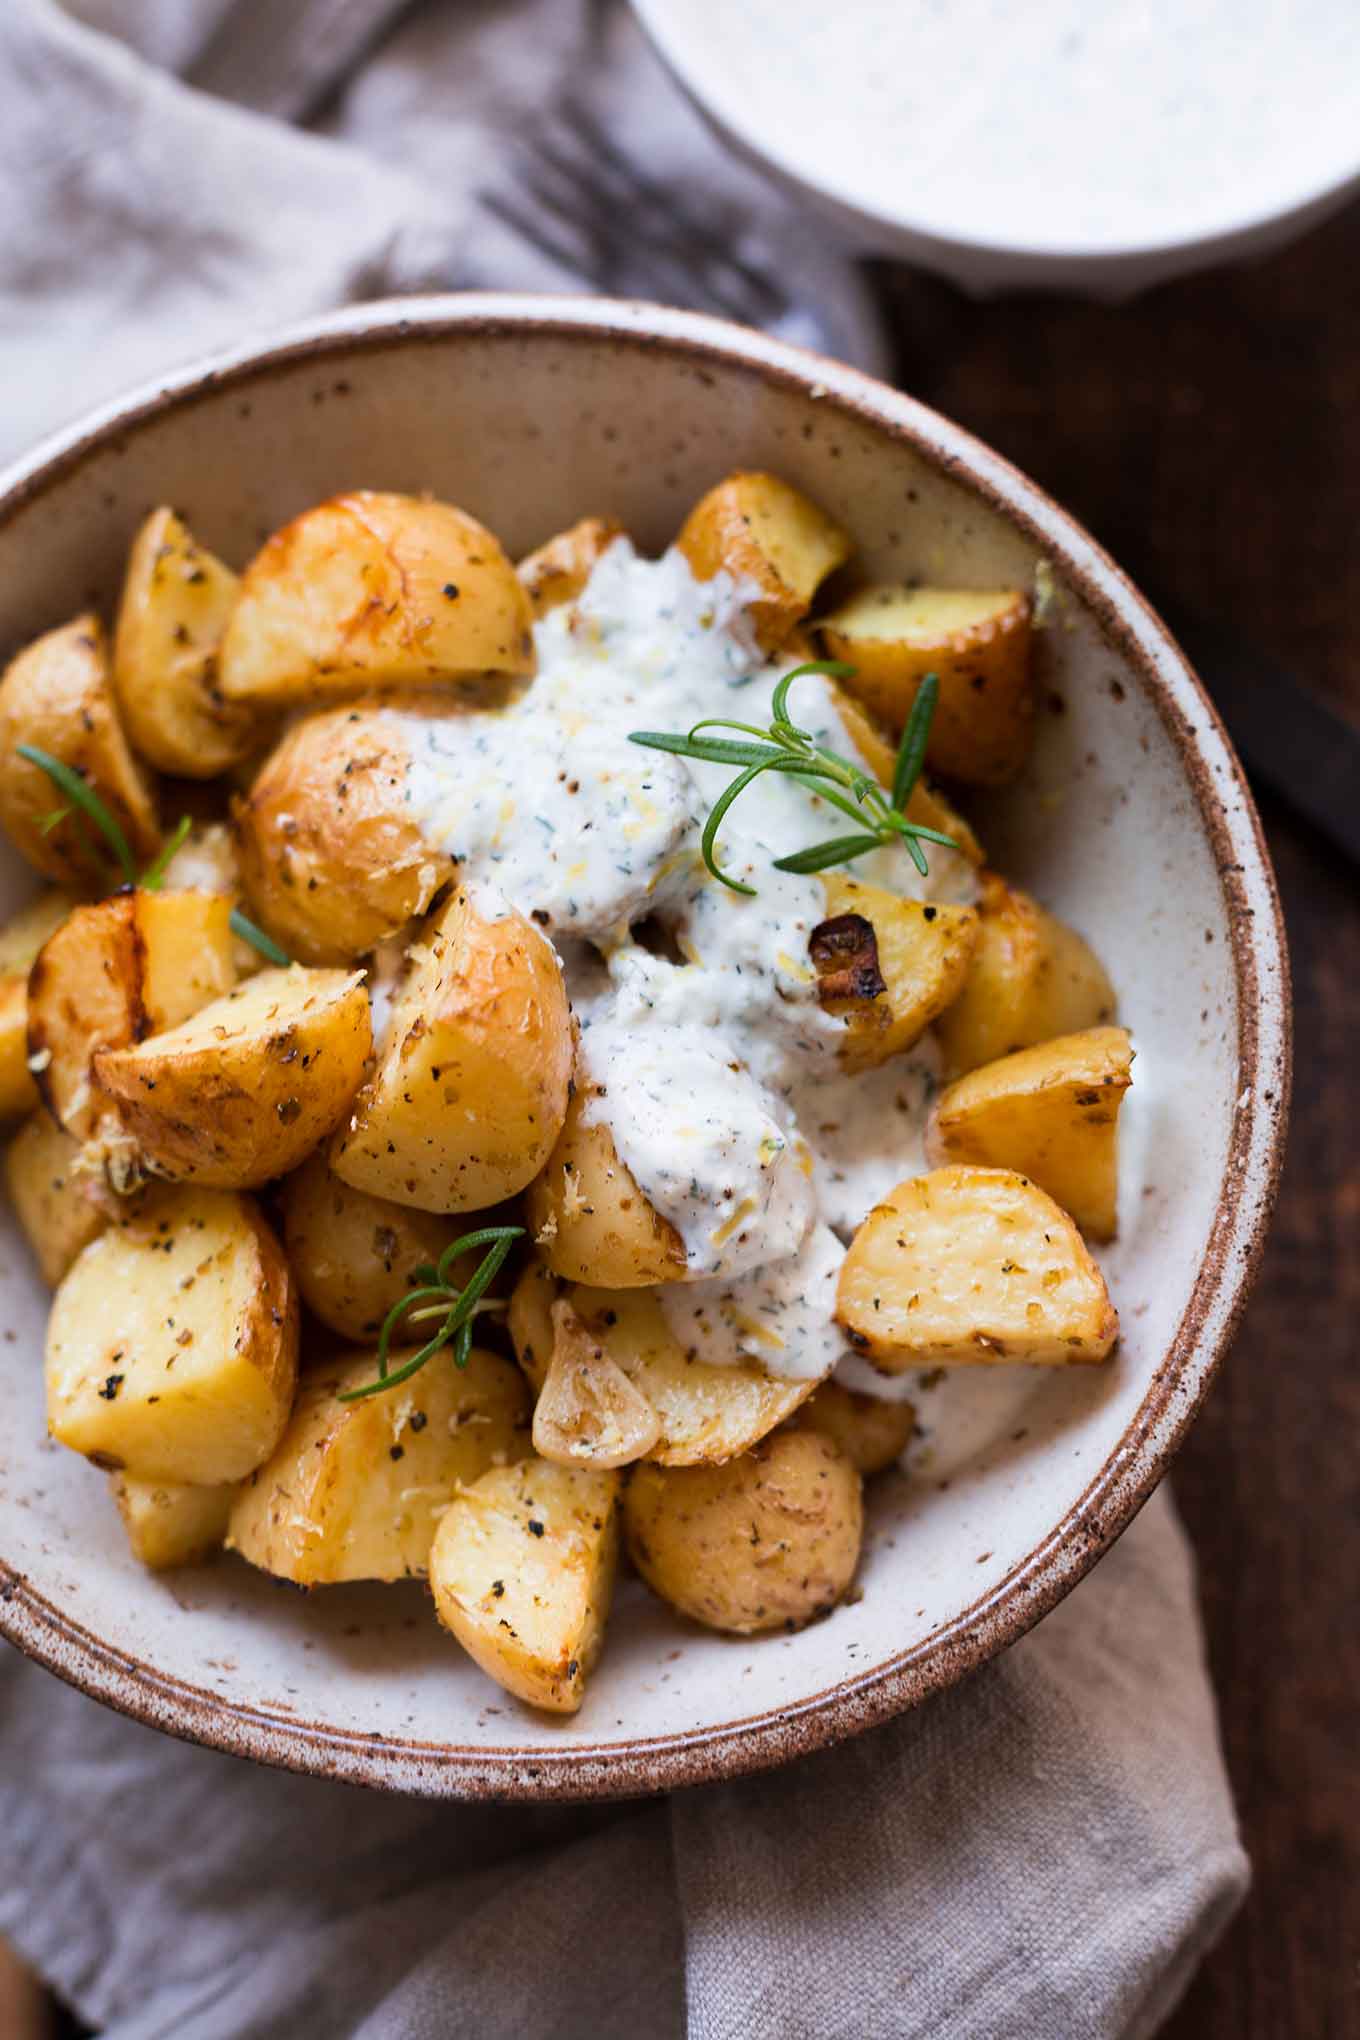 Griechische Ofenkartoffeln mit Joghurt-Feta-Dip. Dieses schnelle Rezept ist super einfach, leicht und SO gut! - Kochkarussell.com #ofenkartoffeln #rezept #sommerrezept #schnellundeinfach #zitrone #dip 